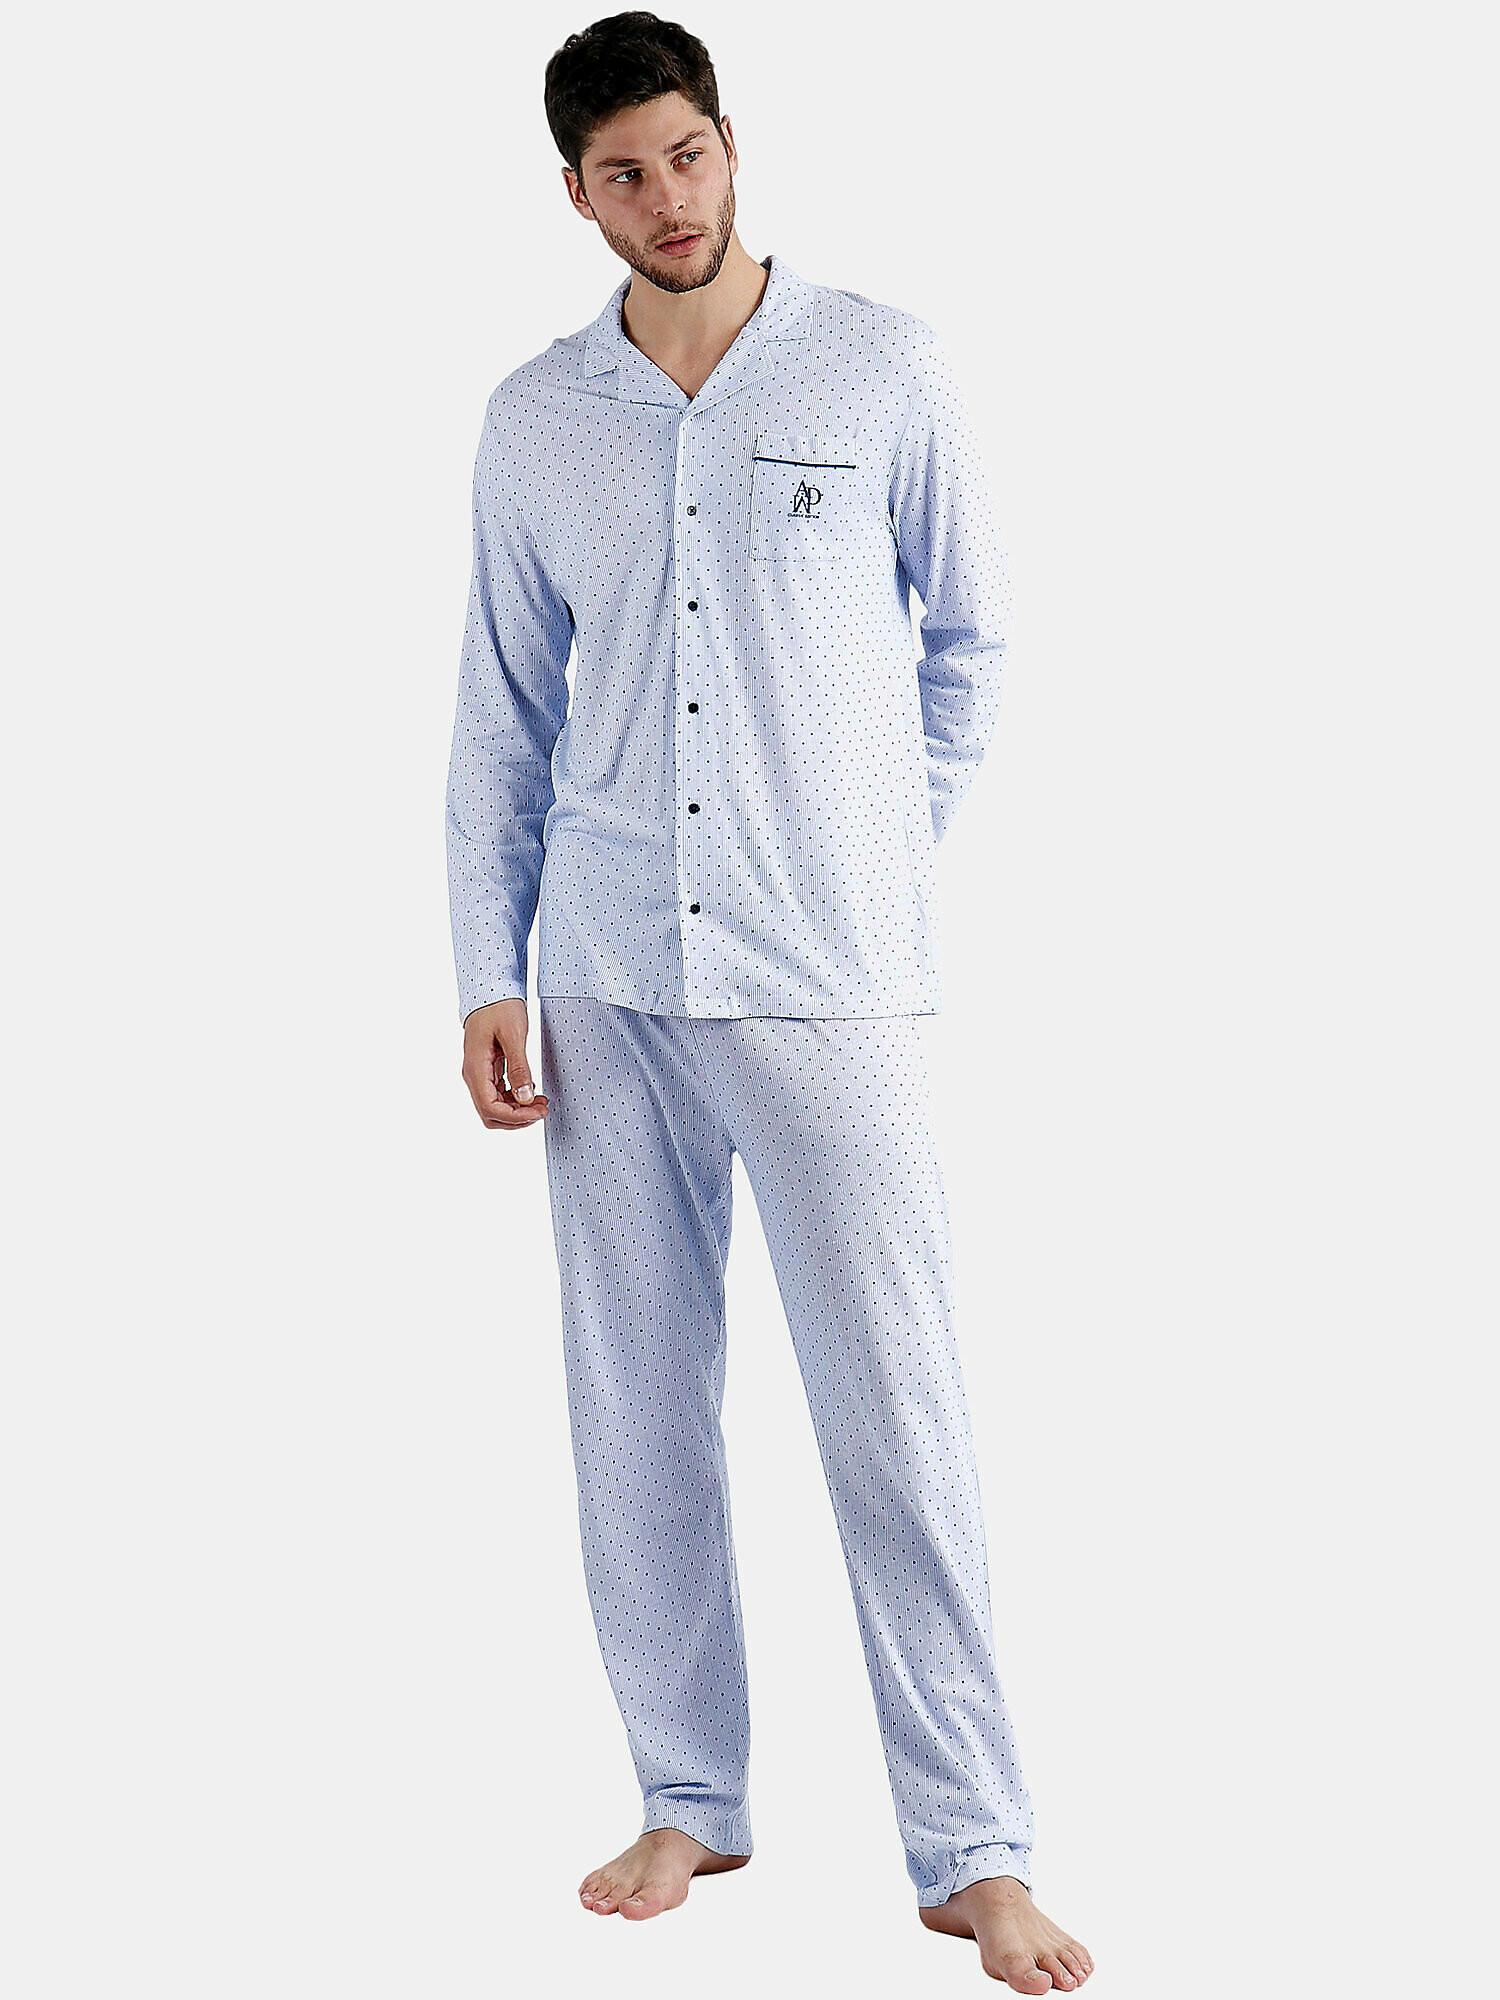 Pyjama Hausanzug Hose Und Hemd Stripes And Dots Herren Blau L von Admas